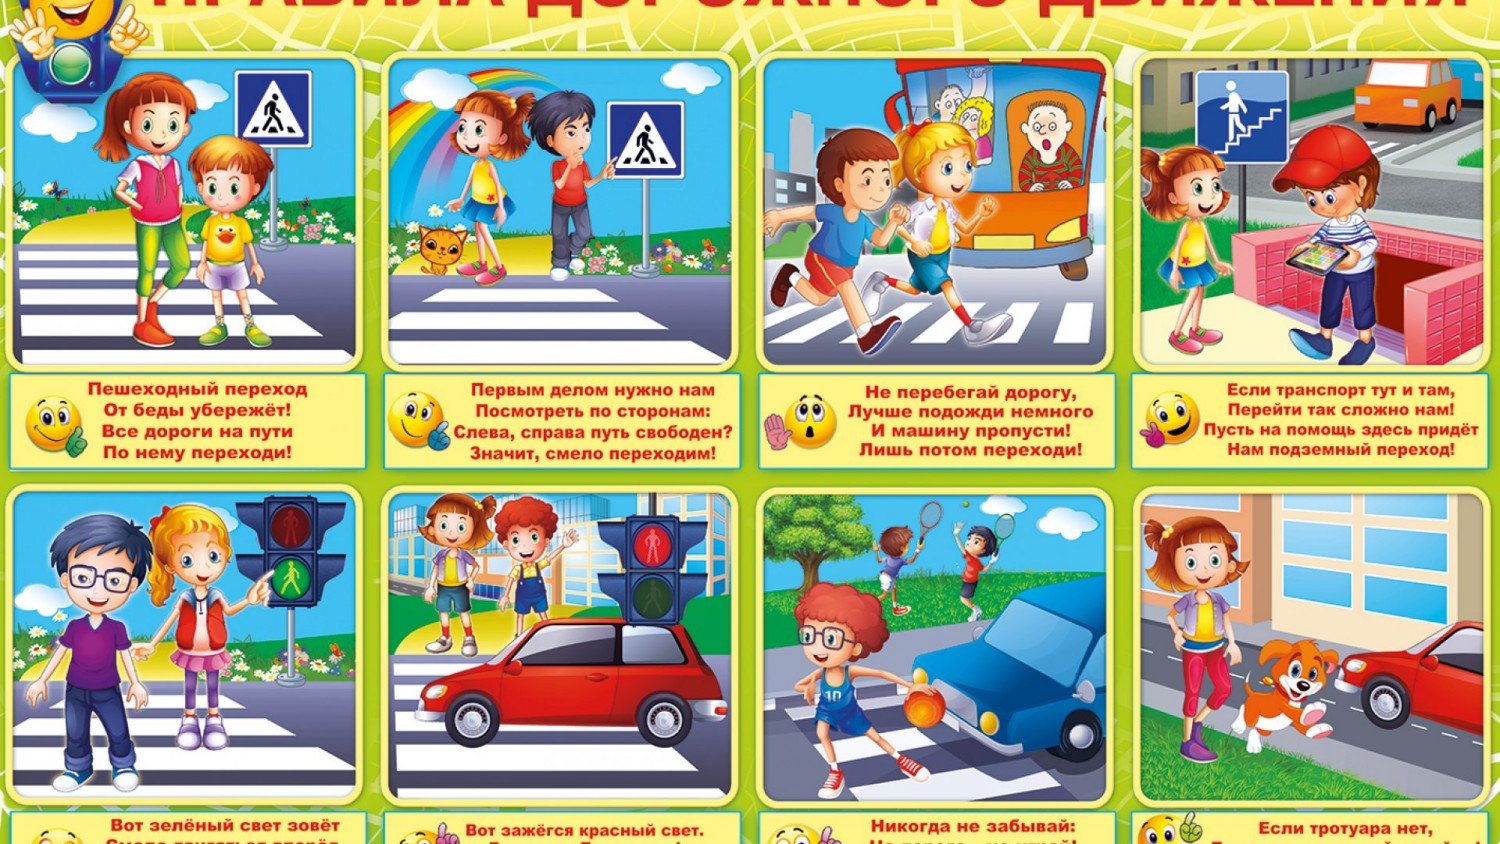 Визитка пдд. ПДД для детей. Правила дорожного движения картинки. Правил дорожного движения для детей. ПДД картинки для детей.